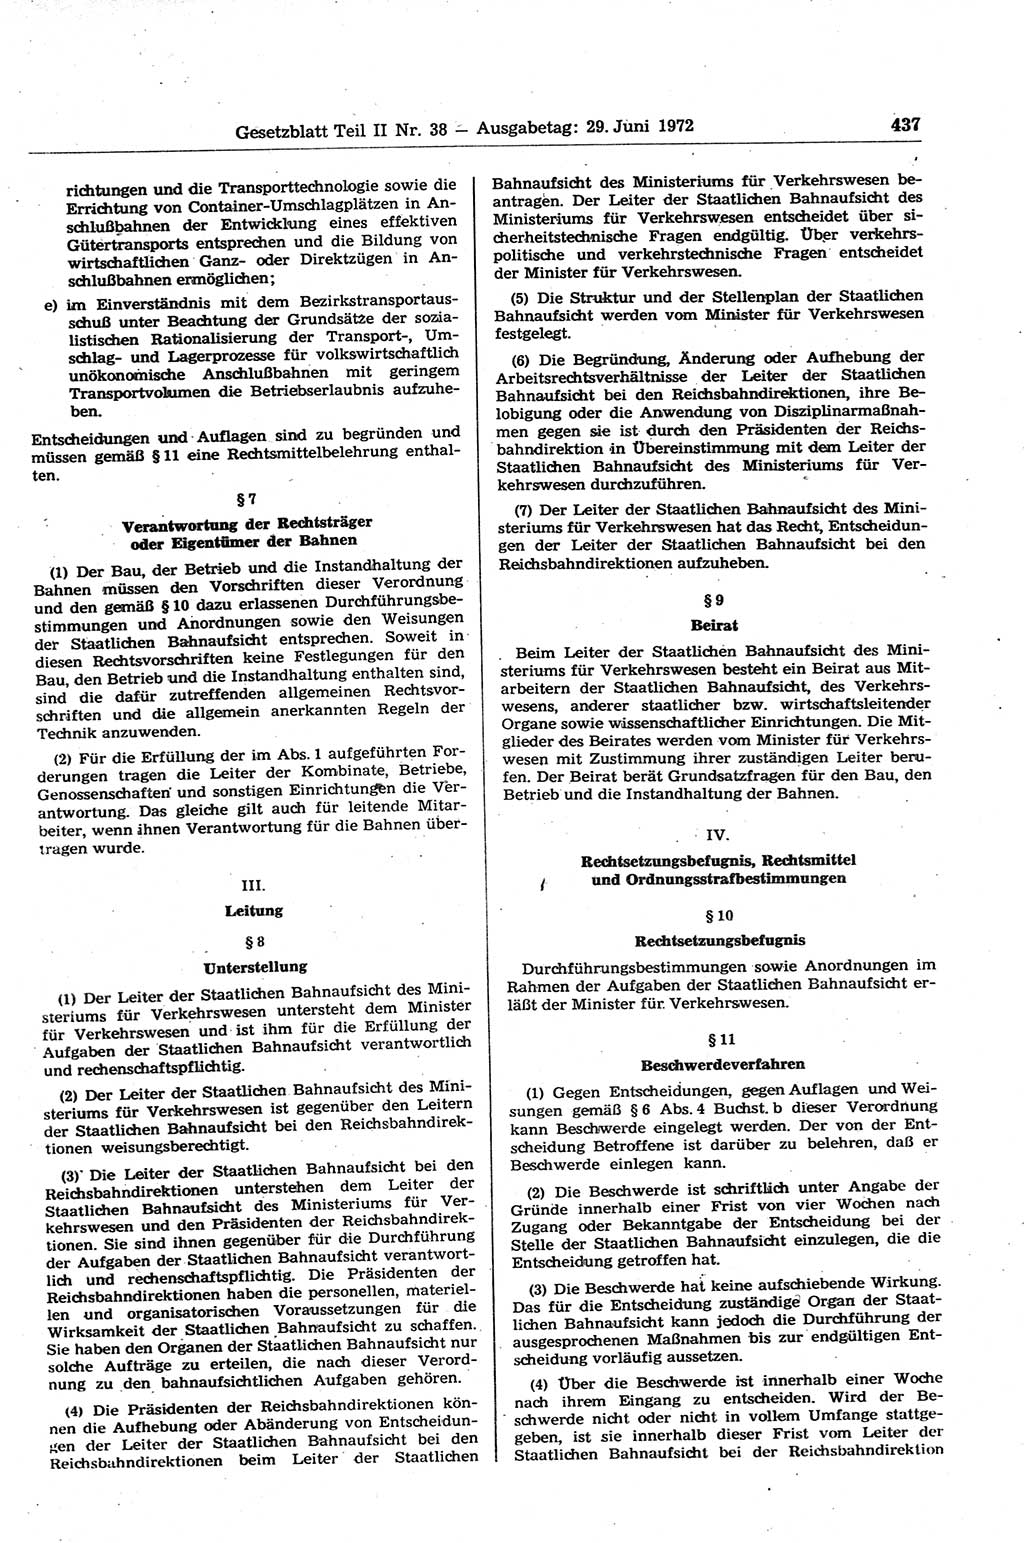 Gesetzblatt (GBl.) der Deutschen Demokratischen Republik (DDR) Teil ⅠⅠ 1972, Seite 437 (GBl. DDR ⅠⅠ 1972, S. 437)